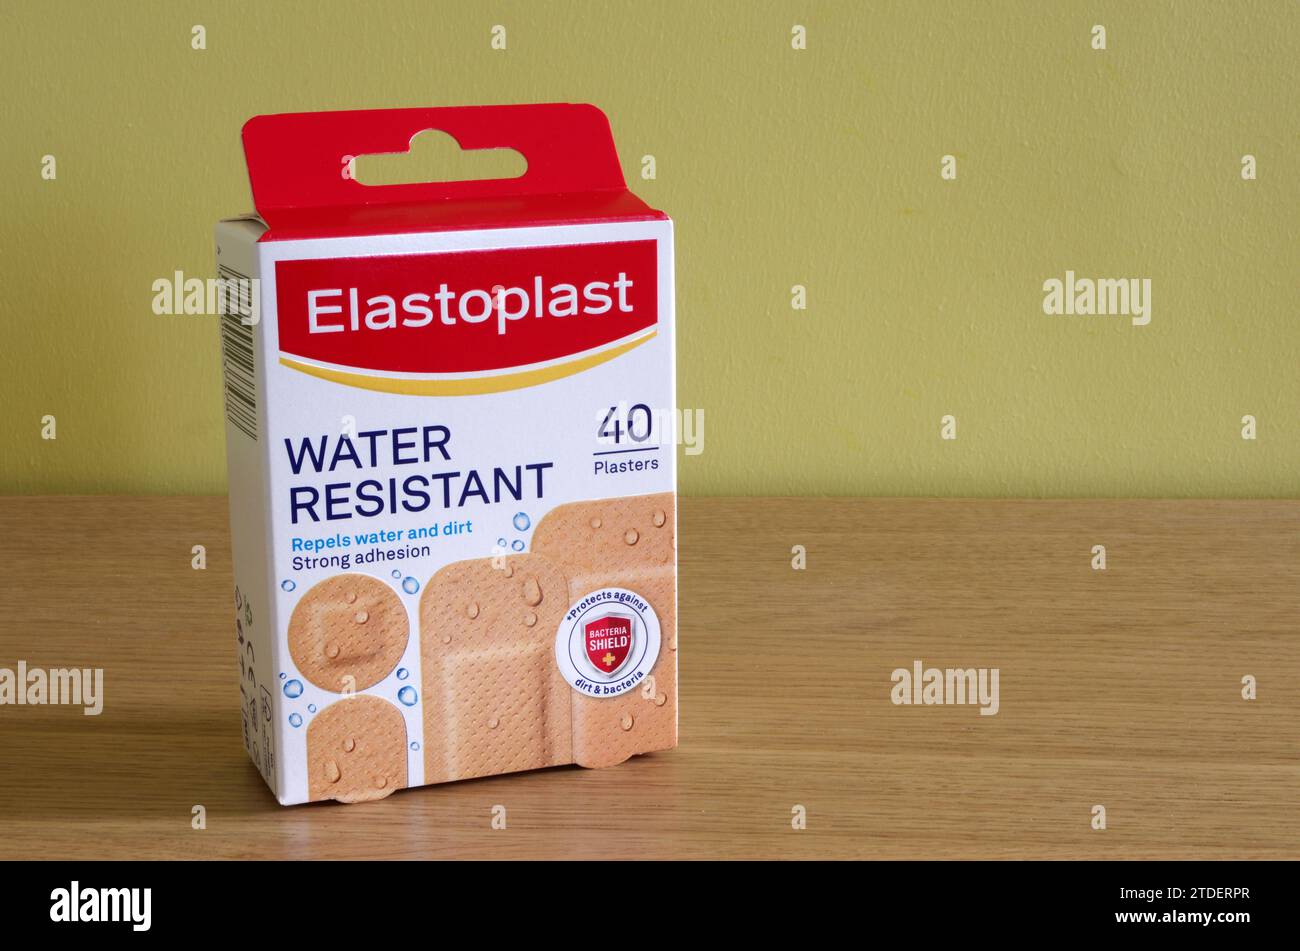 Paquet de pansements Elastoplast résistants à l'eau ou de bandeaux, Royaume-Uni Banque D'Images